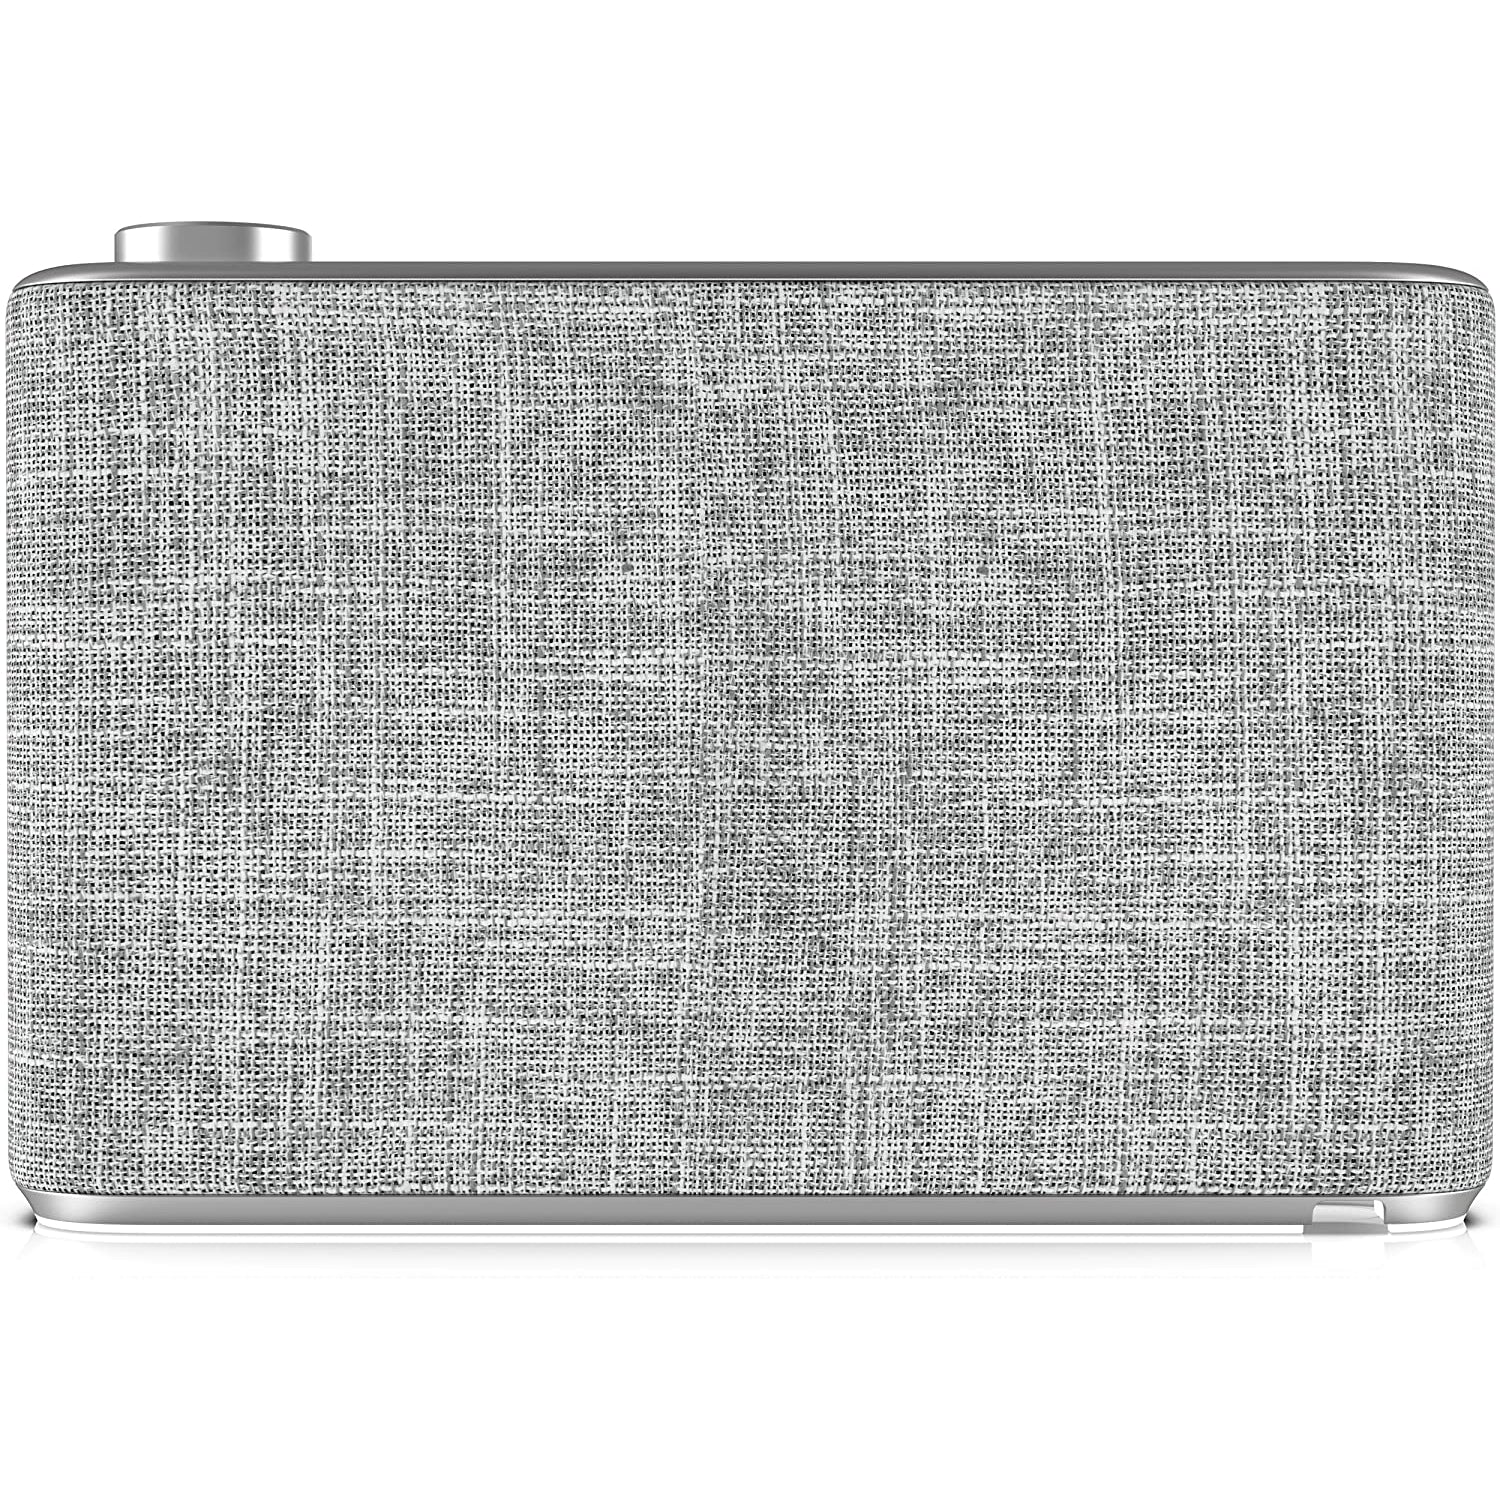 Pure Avalon N5 DAB+/DAB/FM Digital Radio with Bluetooth - White / Grey